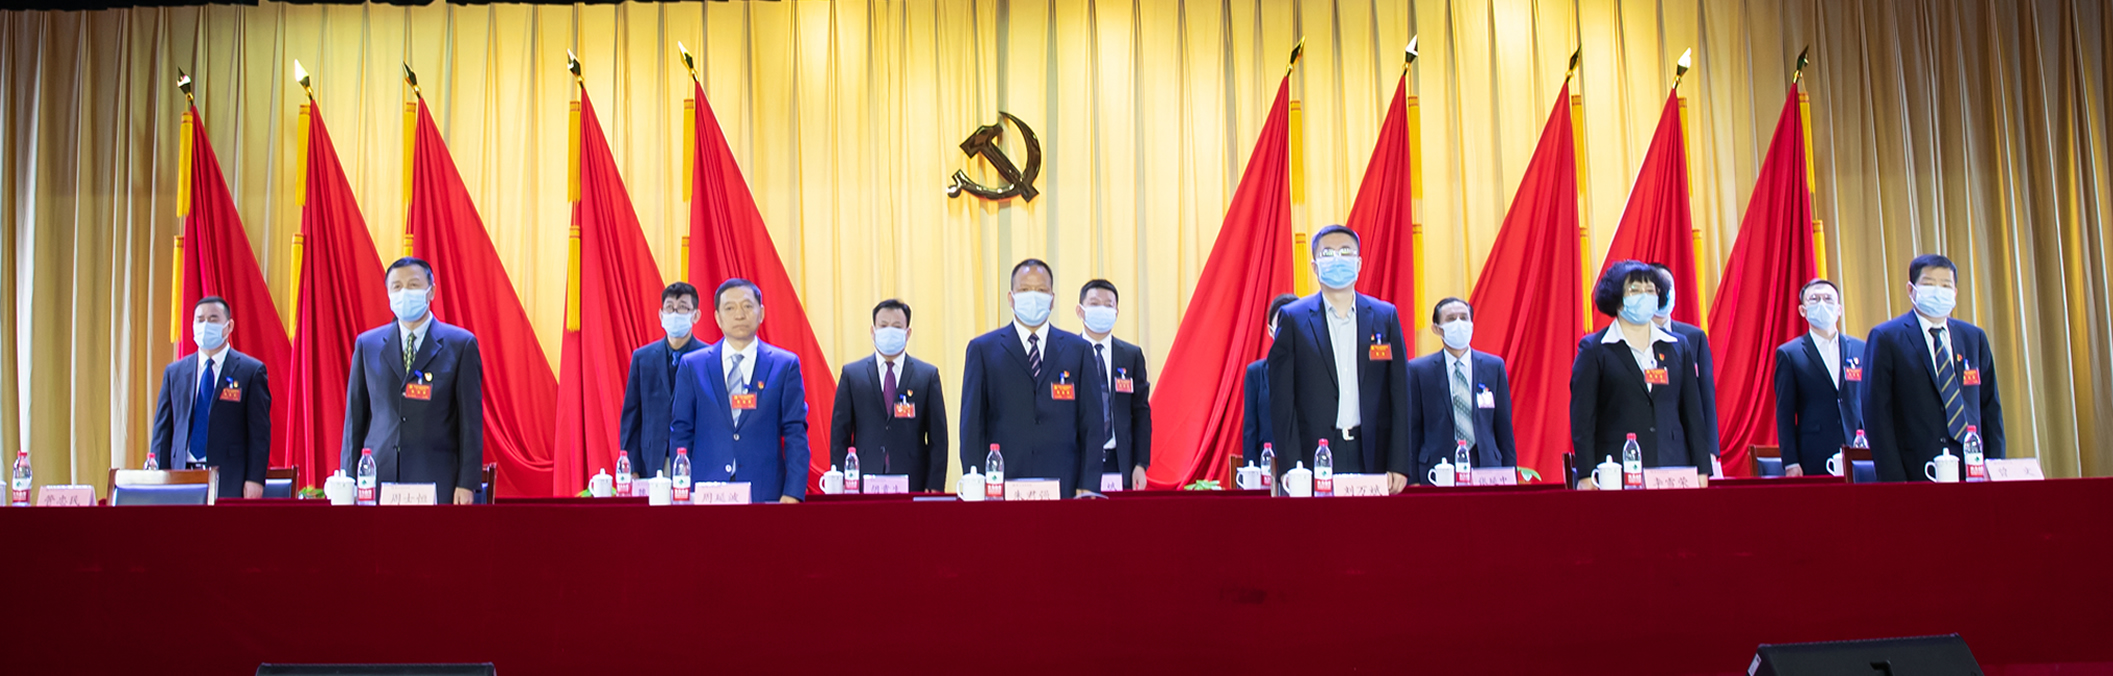 中国共产党西安思源学院第三次代表大会现场